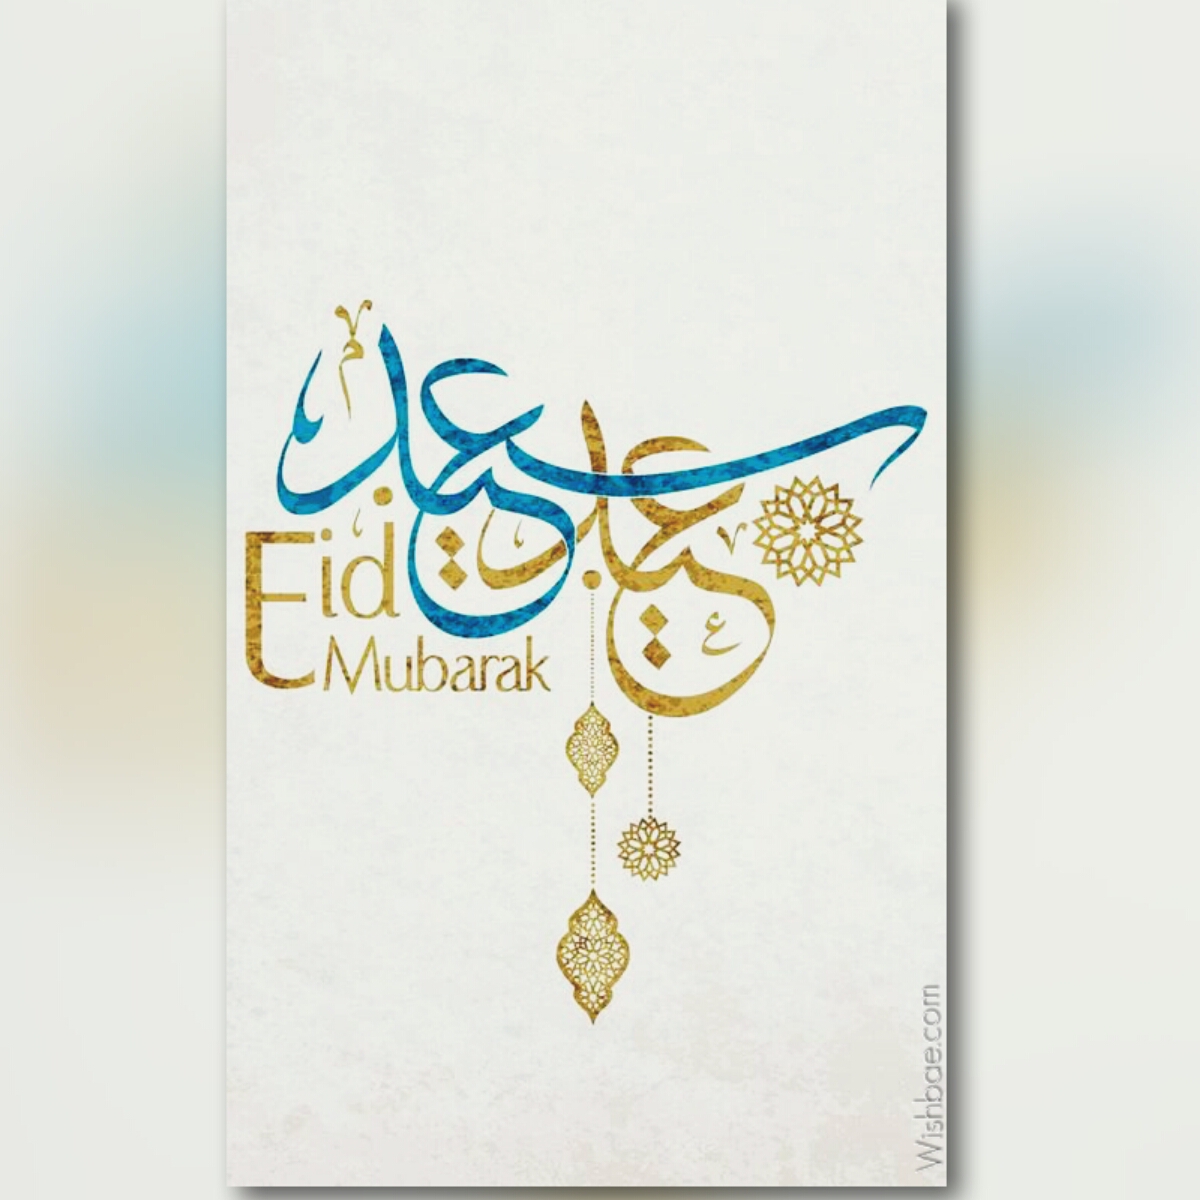 Eid Al Fitr Mubarak 2018 Images